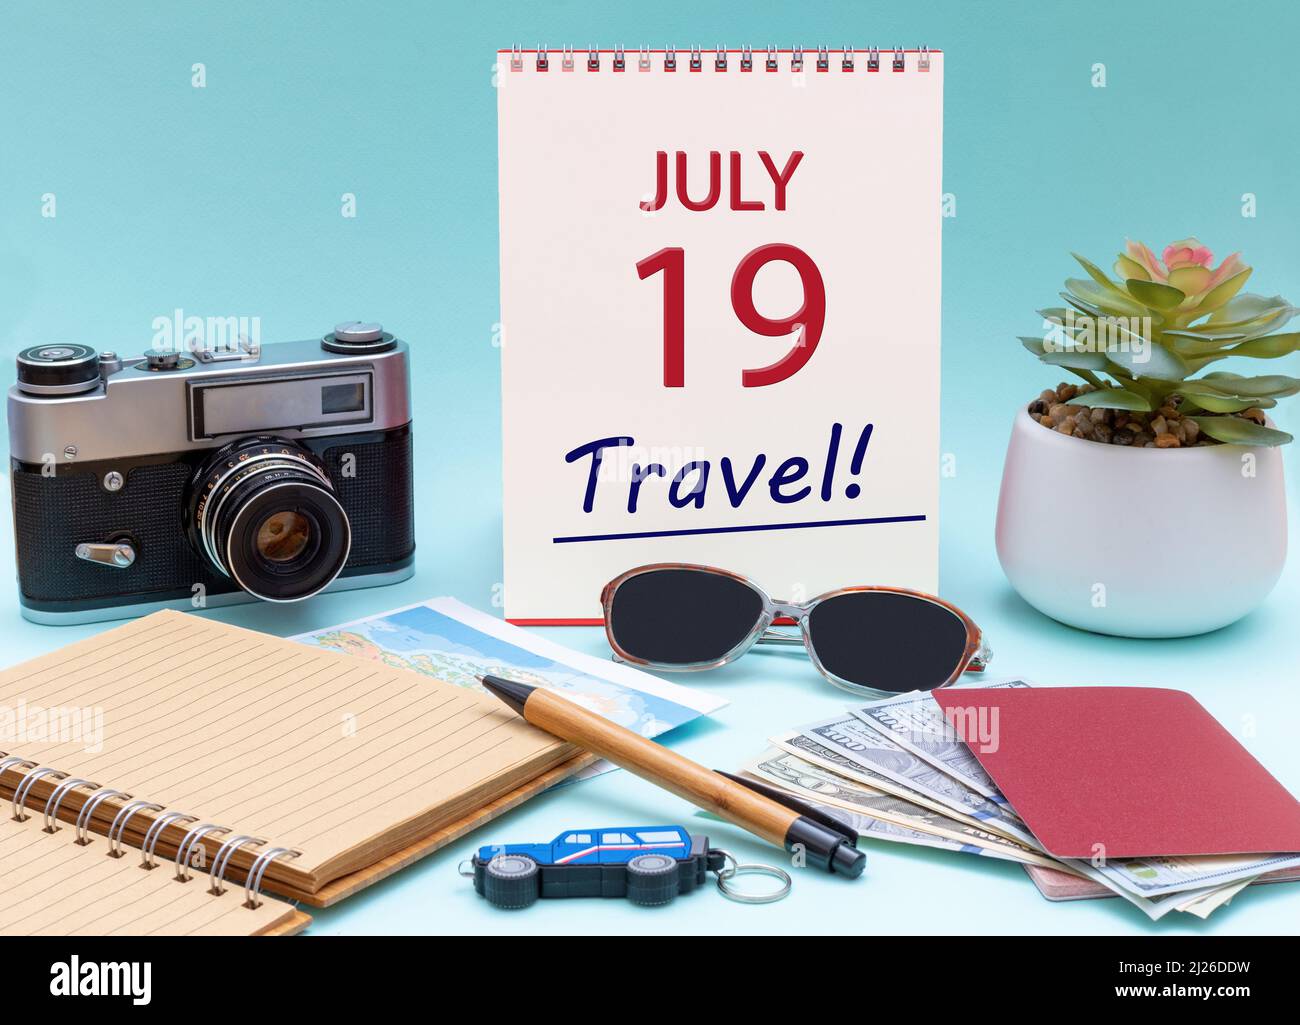 19th jour de juillet. Planification de voyage, voyage de vacances - Calendrier avec la date 19July verres bloc-notes stylo appareil photo passeports en espèces. Mois d'été, jour du vous Banque D'Images